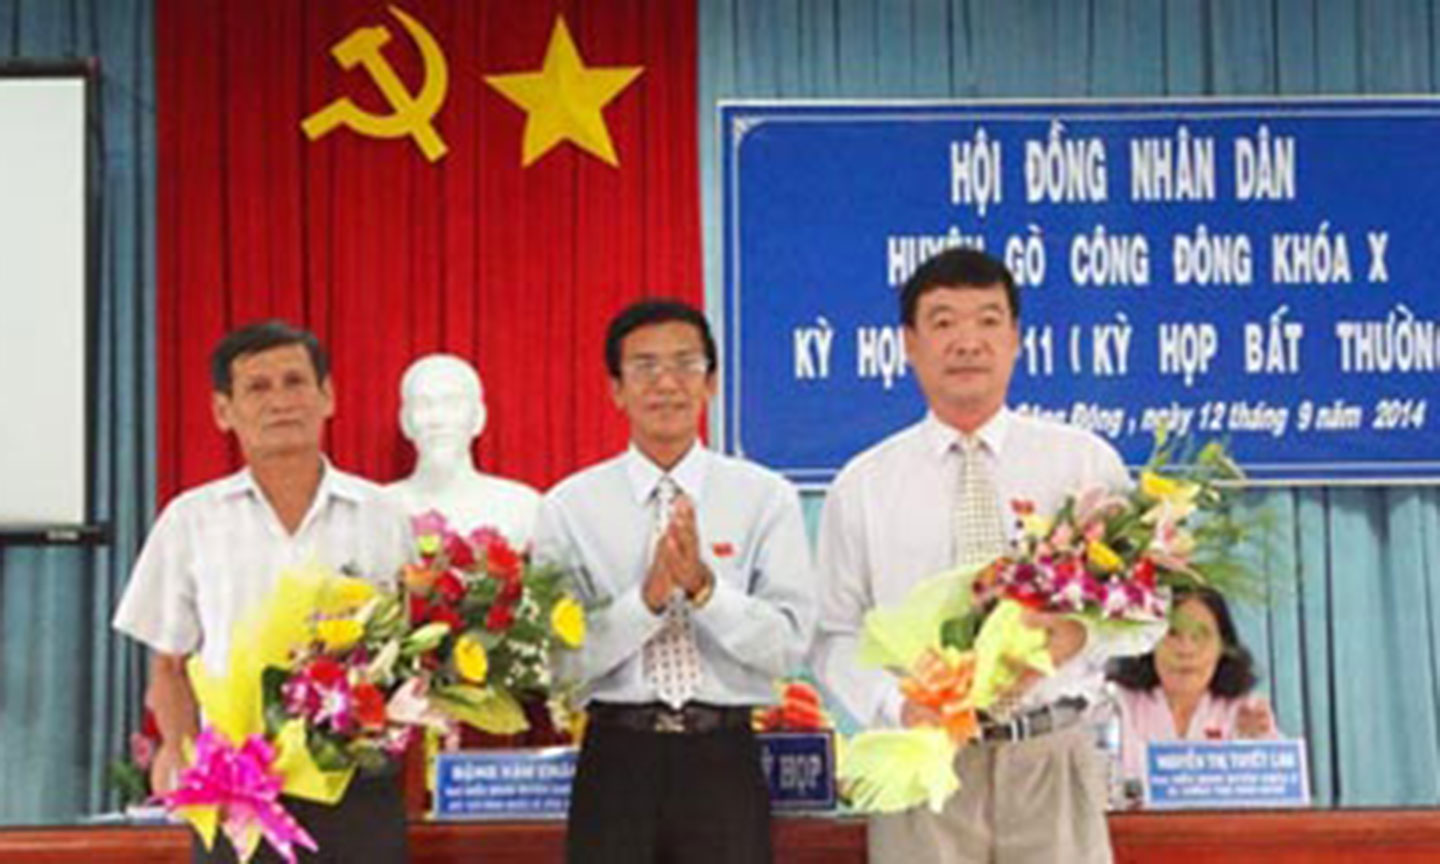 Chú Phạm Văn Bé (đứng bên trái).